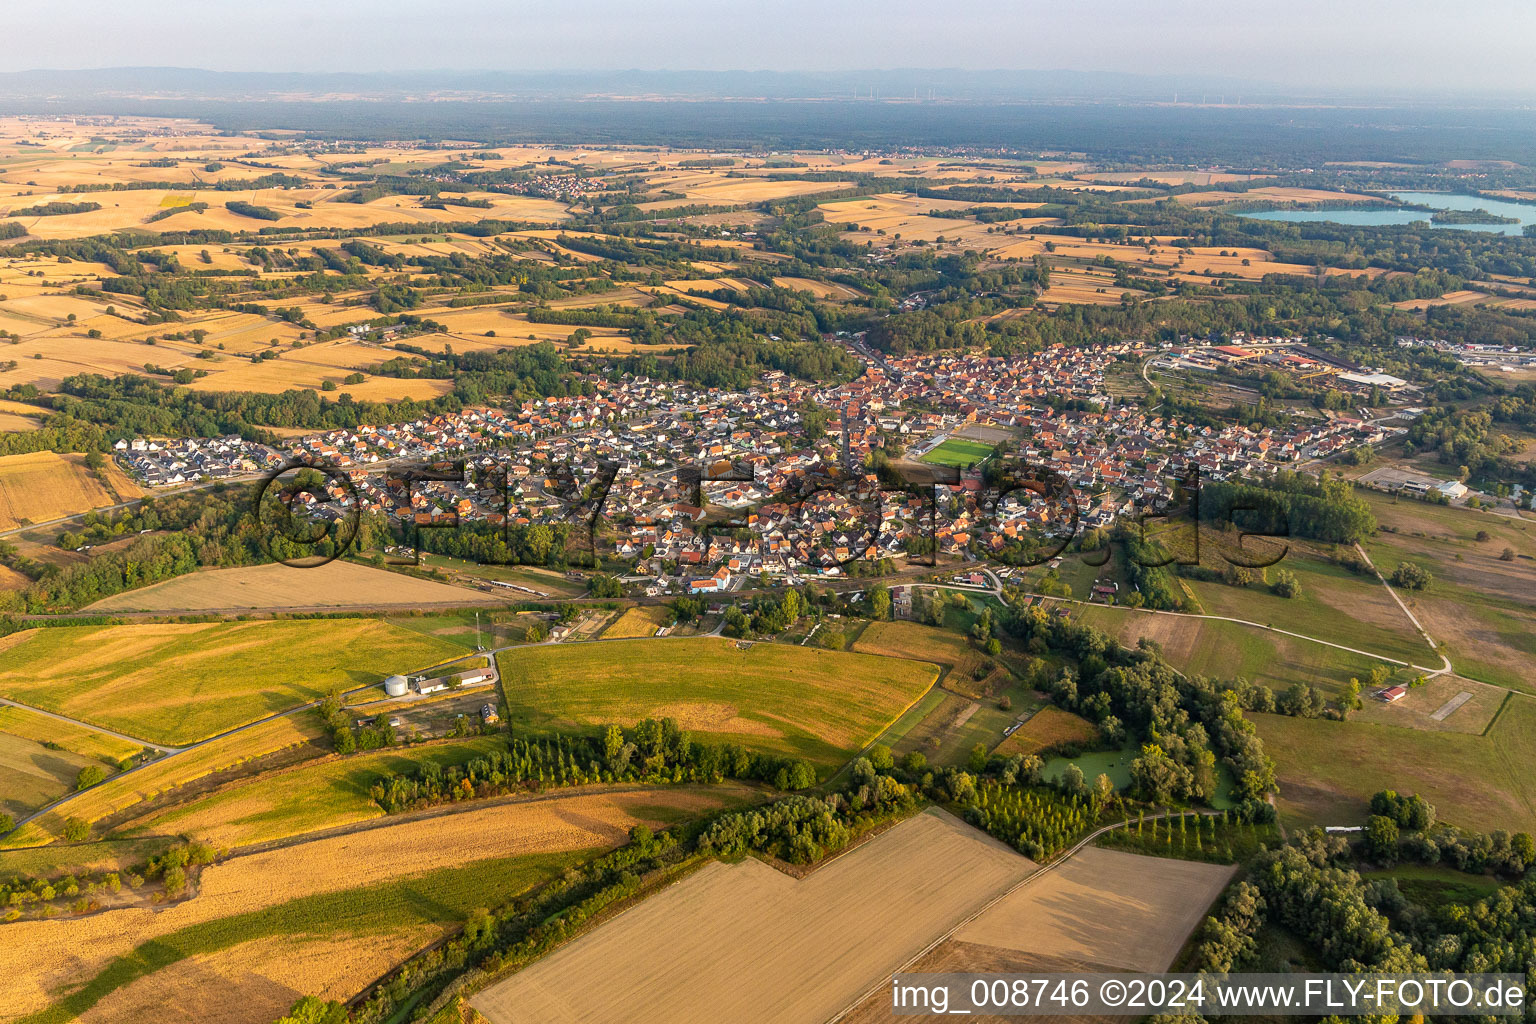 Luftbild von Dorfkern an den Fluß- Uferbereichen des Rhein in Mothern in Grand Est im Bundesland Bas-Rhin, Frankreich